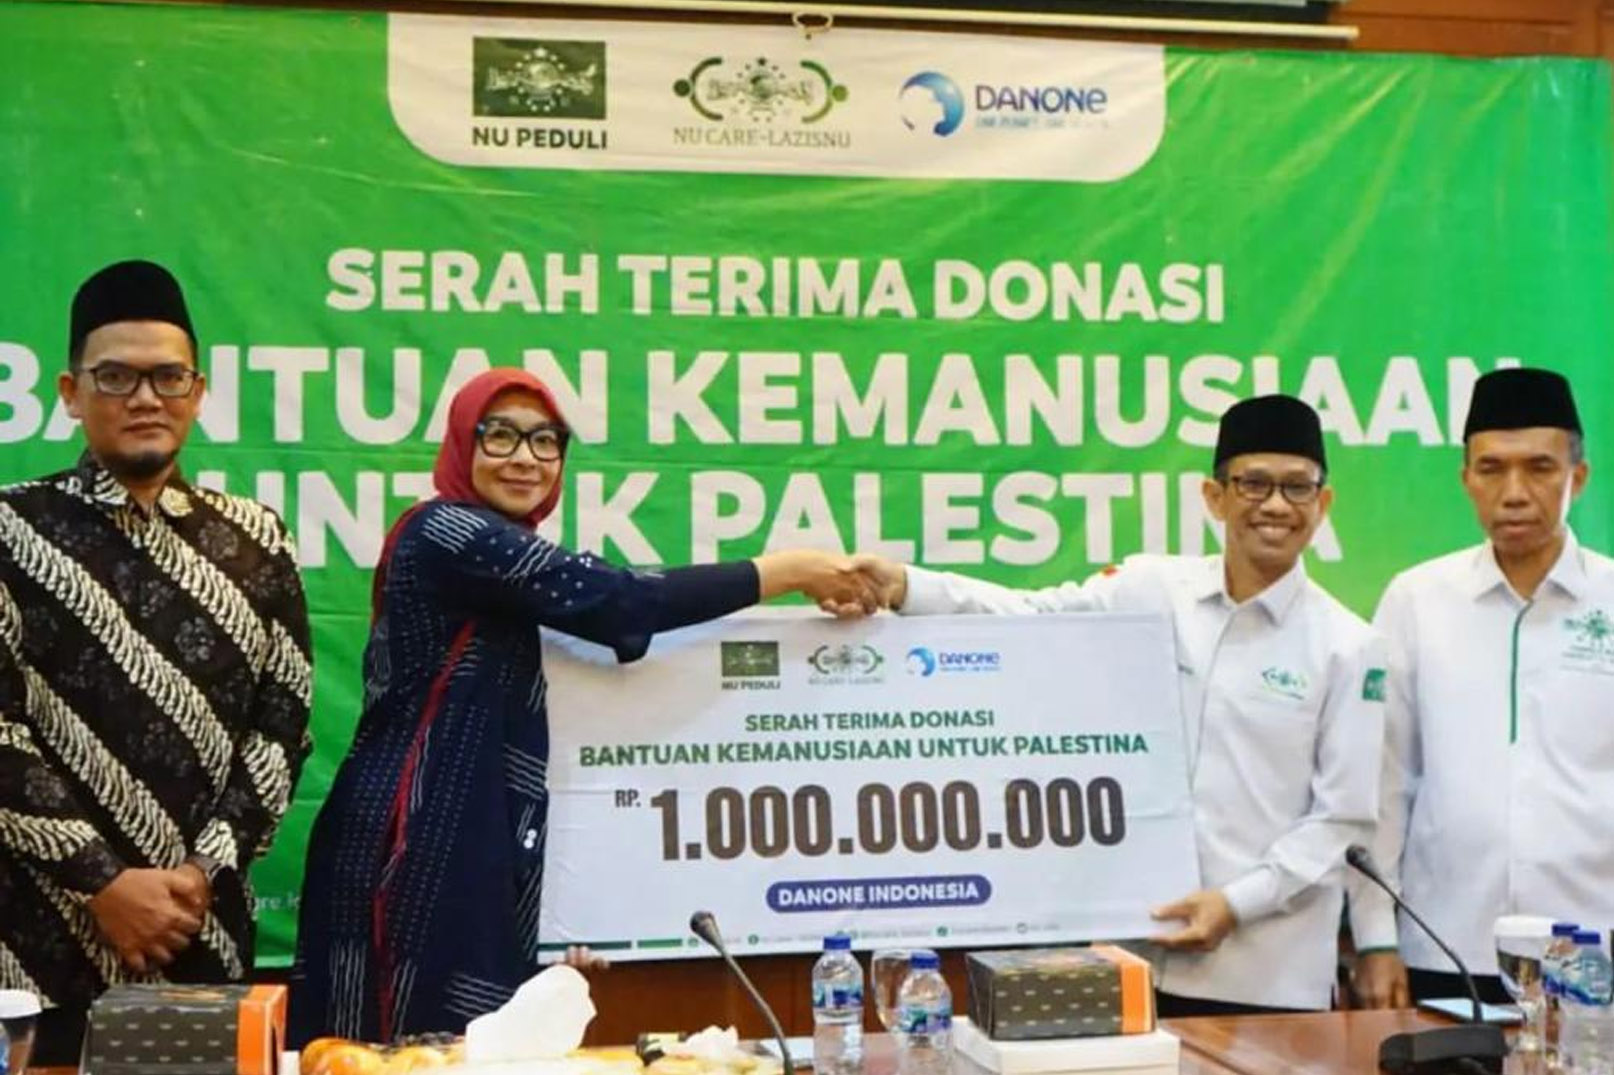 Gencar Seruan Boikot Produk Pro Israel, Danone Indonesia Beri Sumbangan ke Palestina